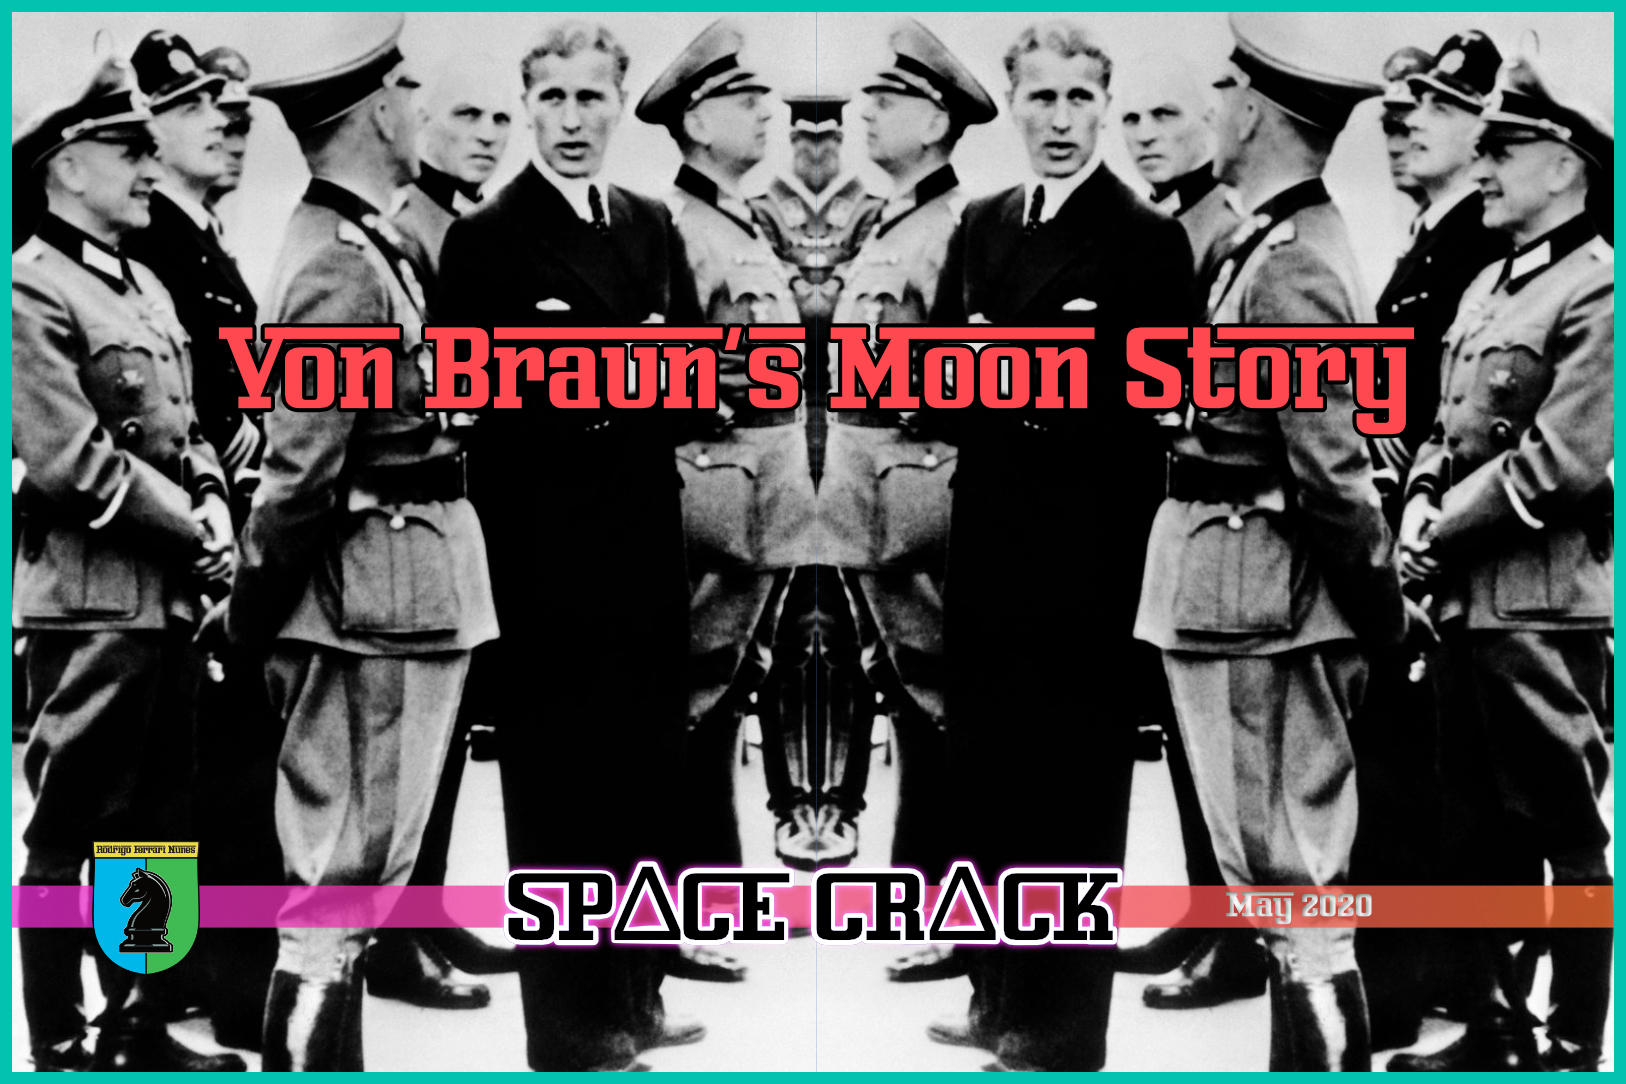 VON BRAUN’S MOON STORY (1969)